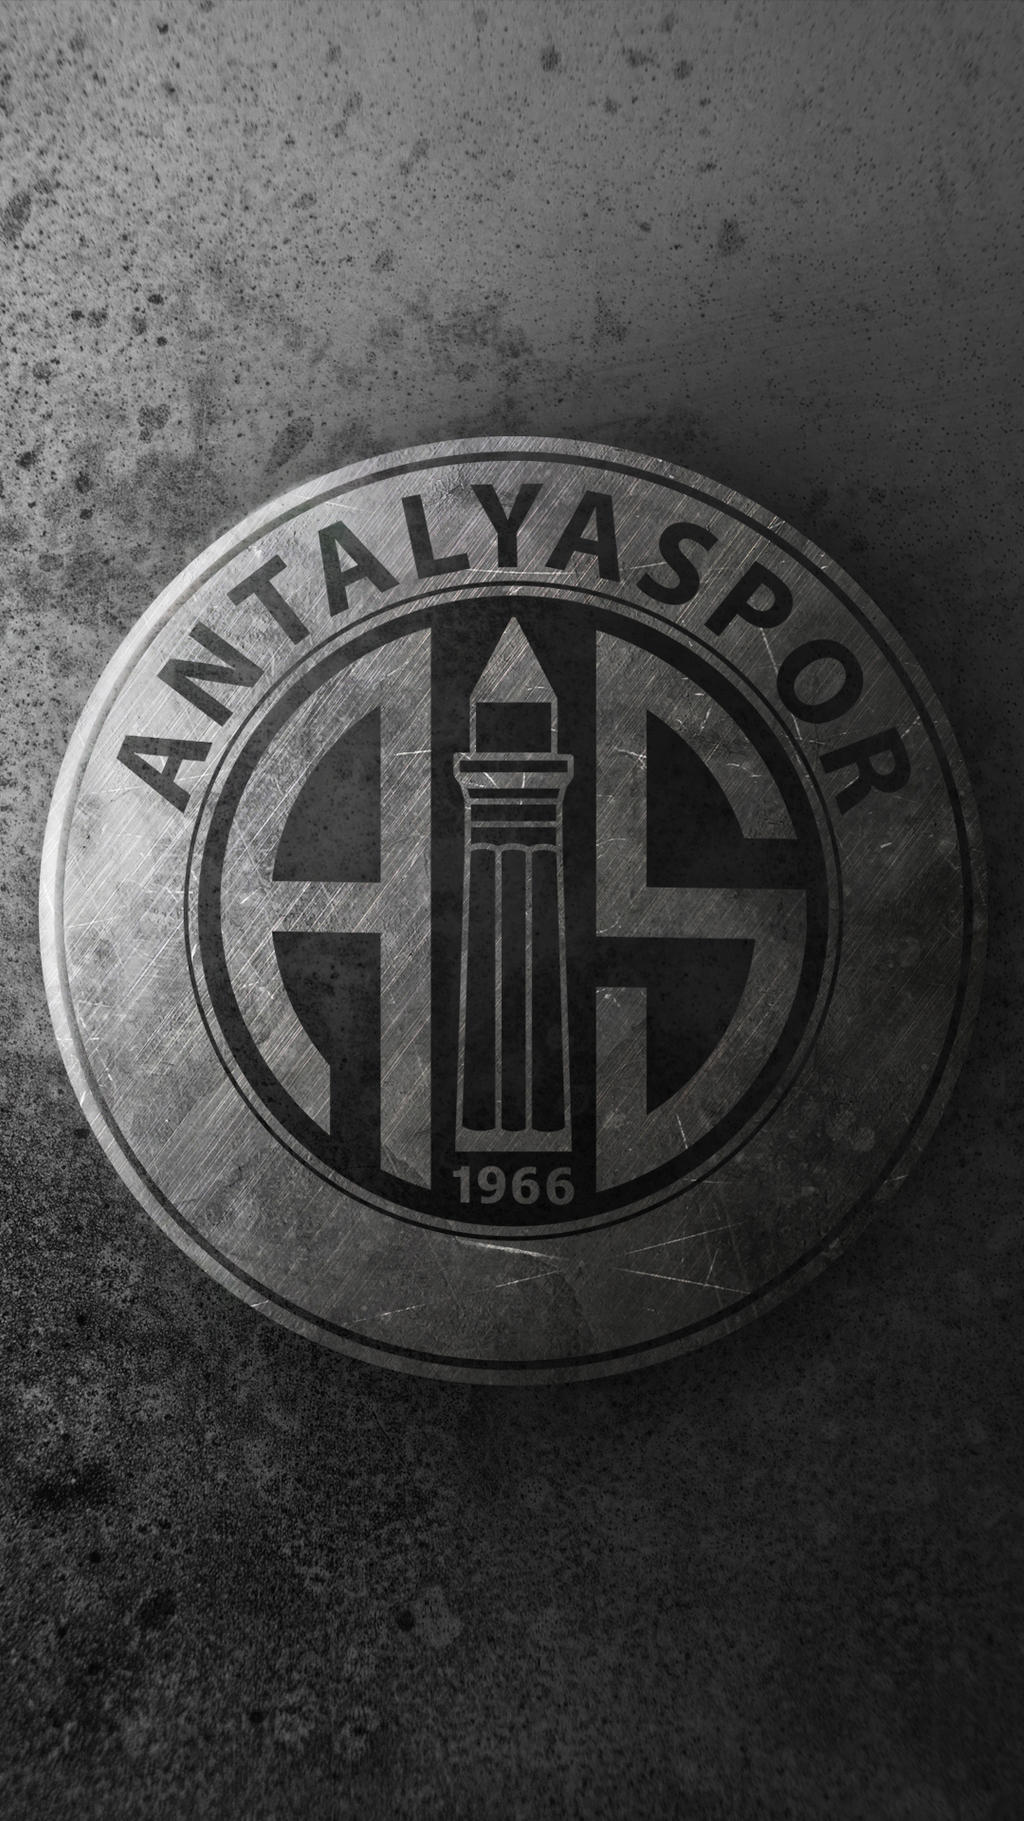 Antalyaspor Wallpapers